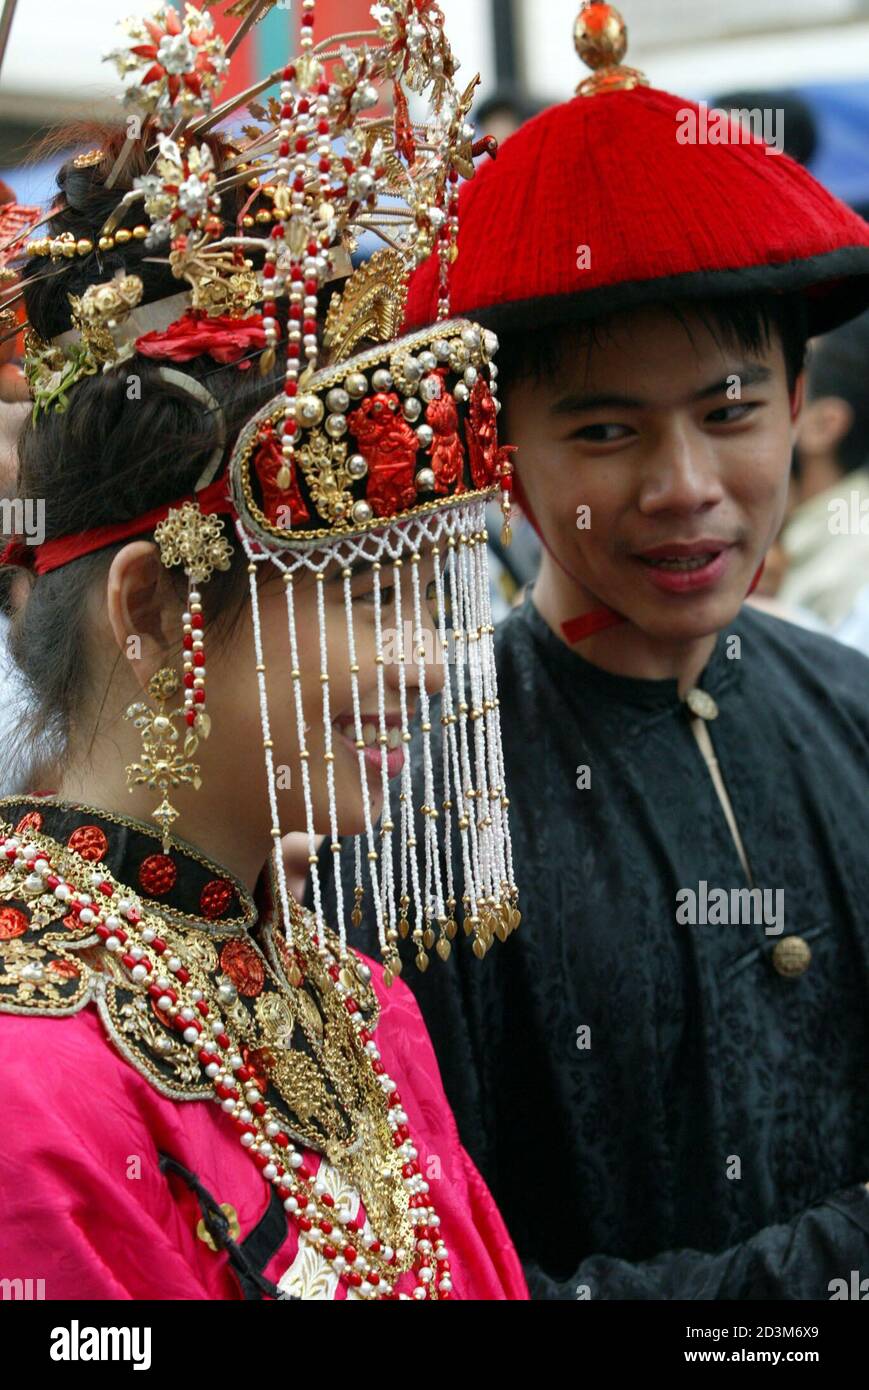 Ethnische Chinesen Indonesier tragen die traditionelle Peranakan-Kleidung während eines Festivals einen Tag nach der CHAP-Goh-Meh-Feier, die das Ende des chinesischen Neujahrs in Jakartas Chinatown am 16. Februar 2003 markiert. Lokale Medien sagten, dass die Feierlichkeiten, zu denen auch eine Parade in Jakarta mit zehntausenden Teilnehmern gehörte, die ersten offenen Cap-Goh-Meh-Feierlichkeiten waren, seit chinesische kulturelle Aktivitäten vor 40 Jahren verboten wurden. Die Peranakan-Gesellschaft ist Nachfahren einer frühen chinesischen Gemeinschaft, die sich ab dem 17. Jahrhundert im malaiischen Archipel niederließ. REUTERS/Darren Whiteside DW/DL Stockfoto